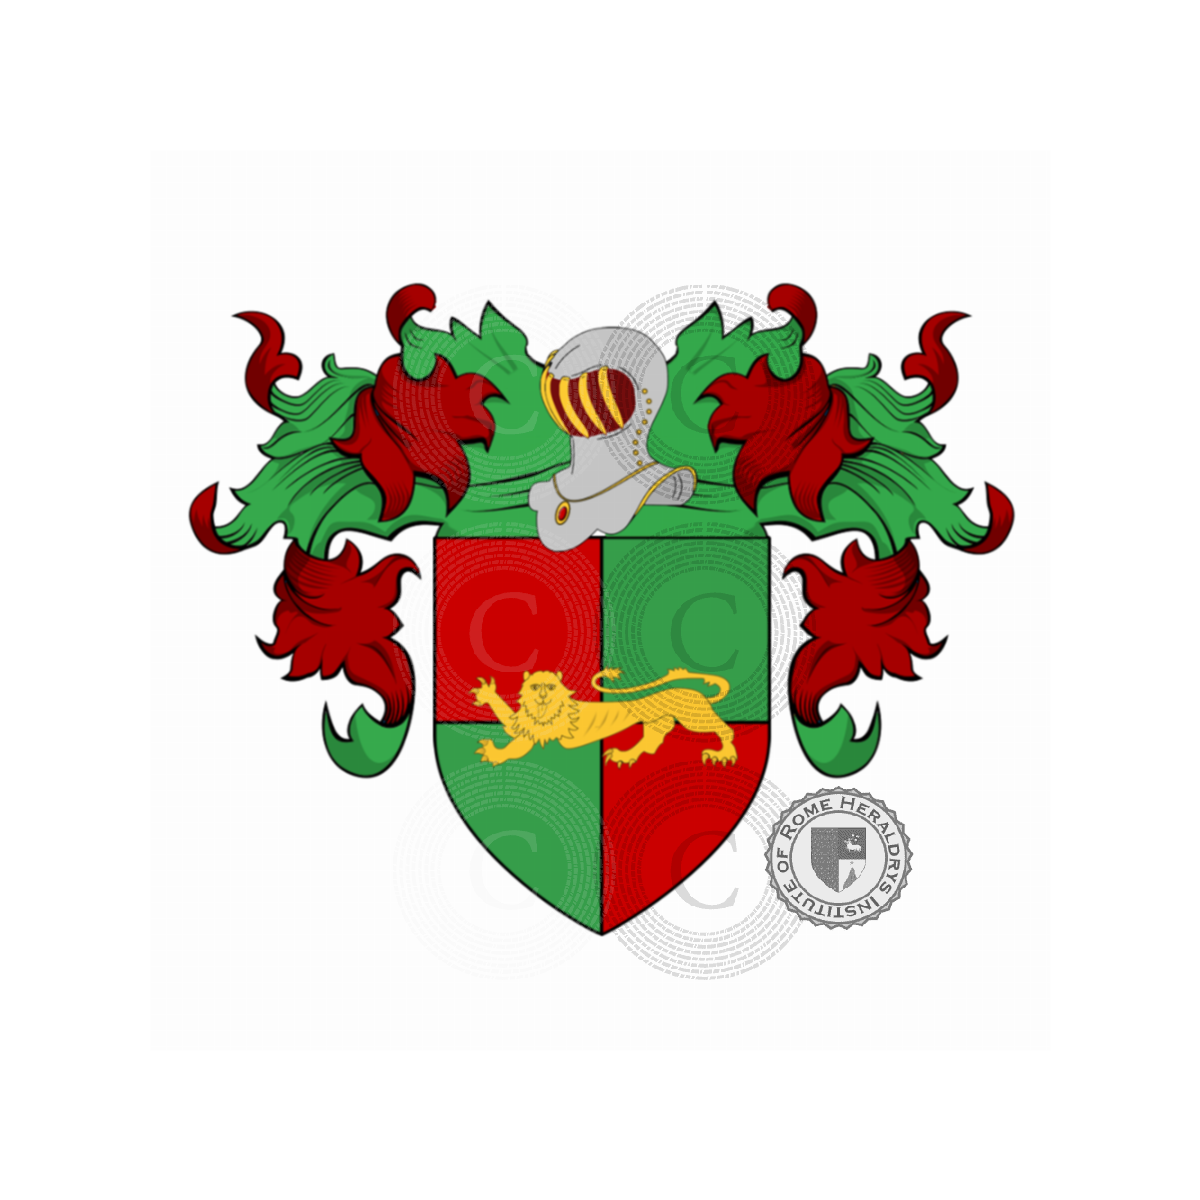 Escudo de la familiaGrassi dall'Avesa o Avesa, Grassi dall'Avesa